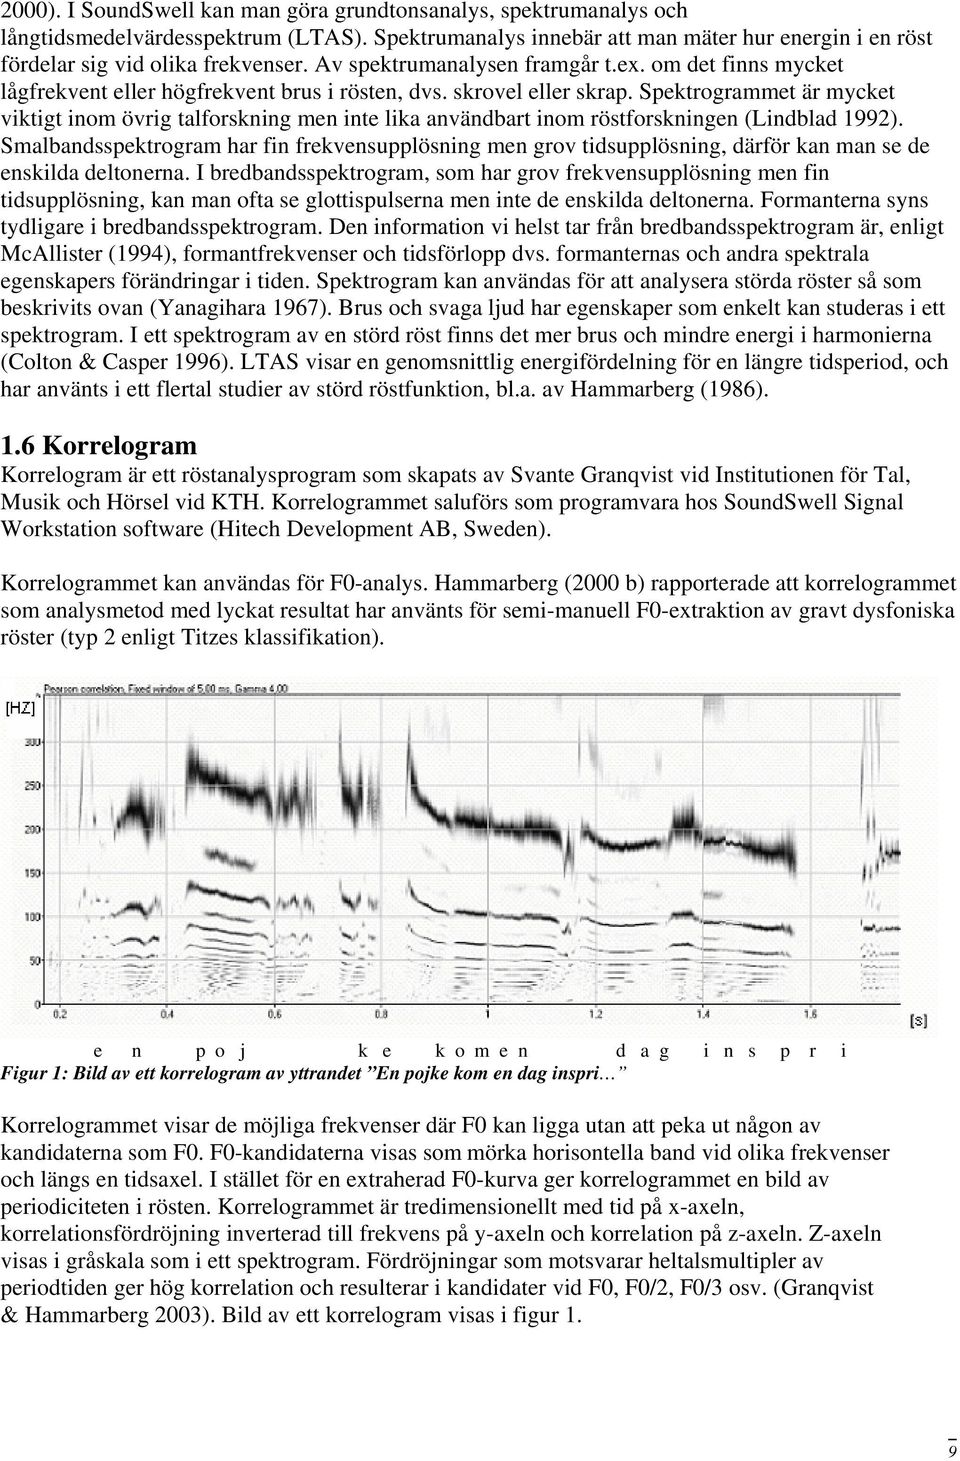 Spektrogrammet är mycket viktigt inom övrig talforskning men inte lika användbart inom röstforskningen (Lindblad 1992).